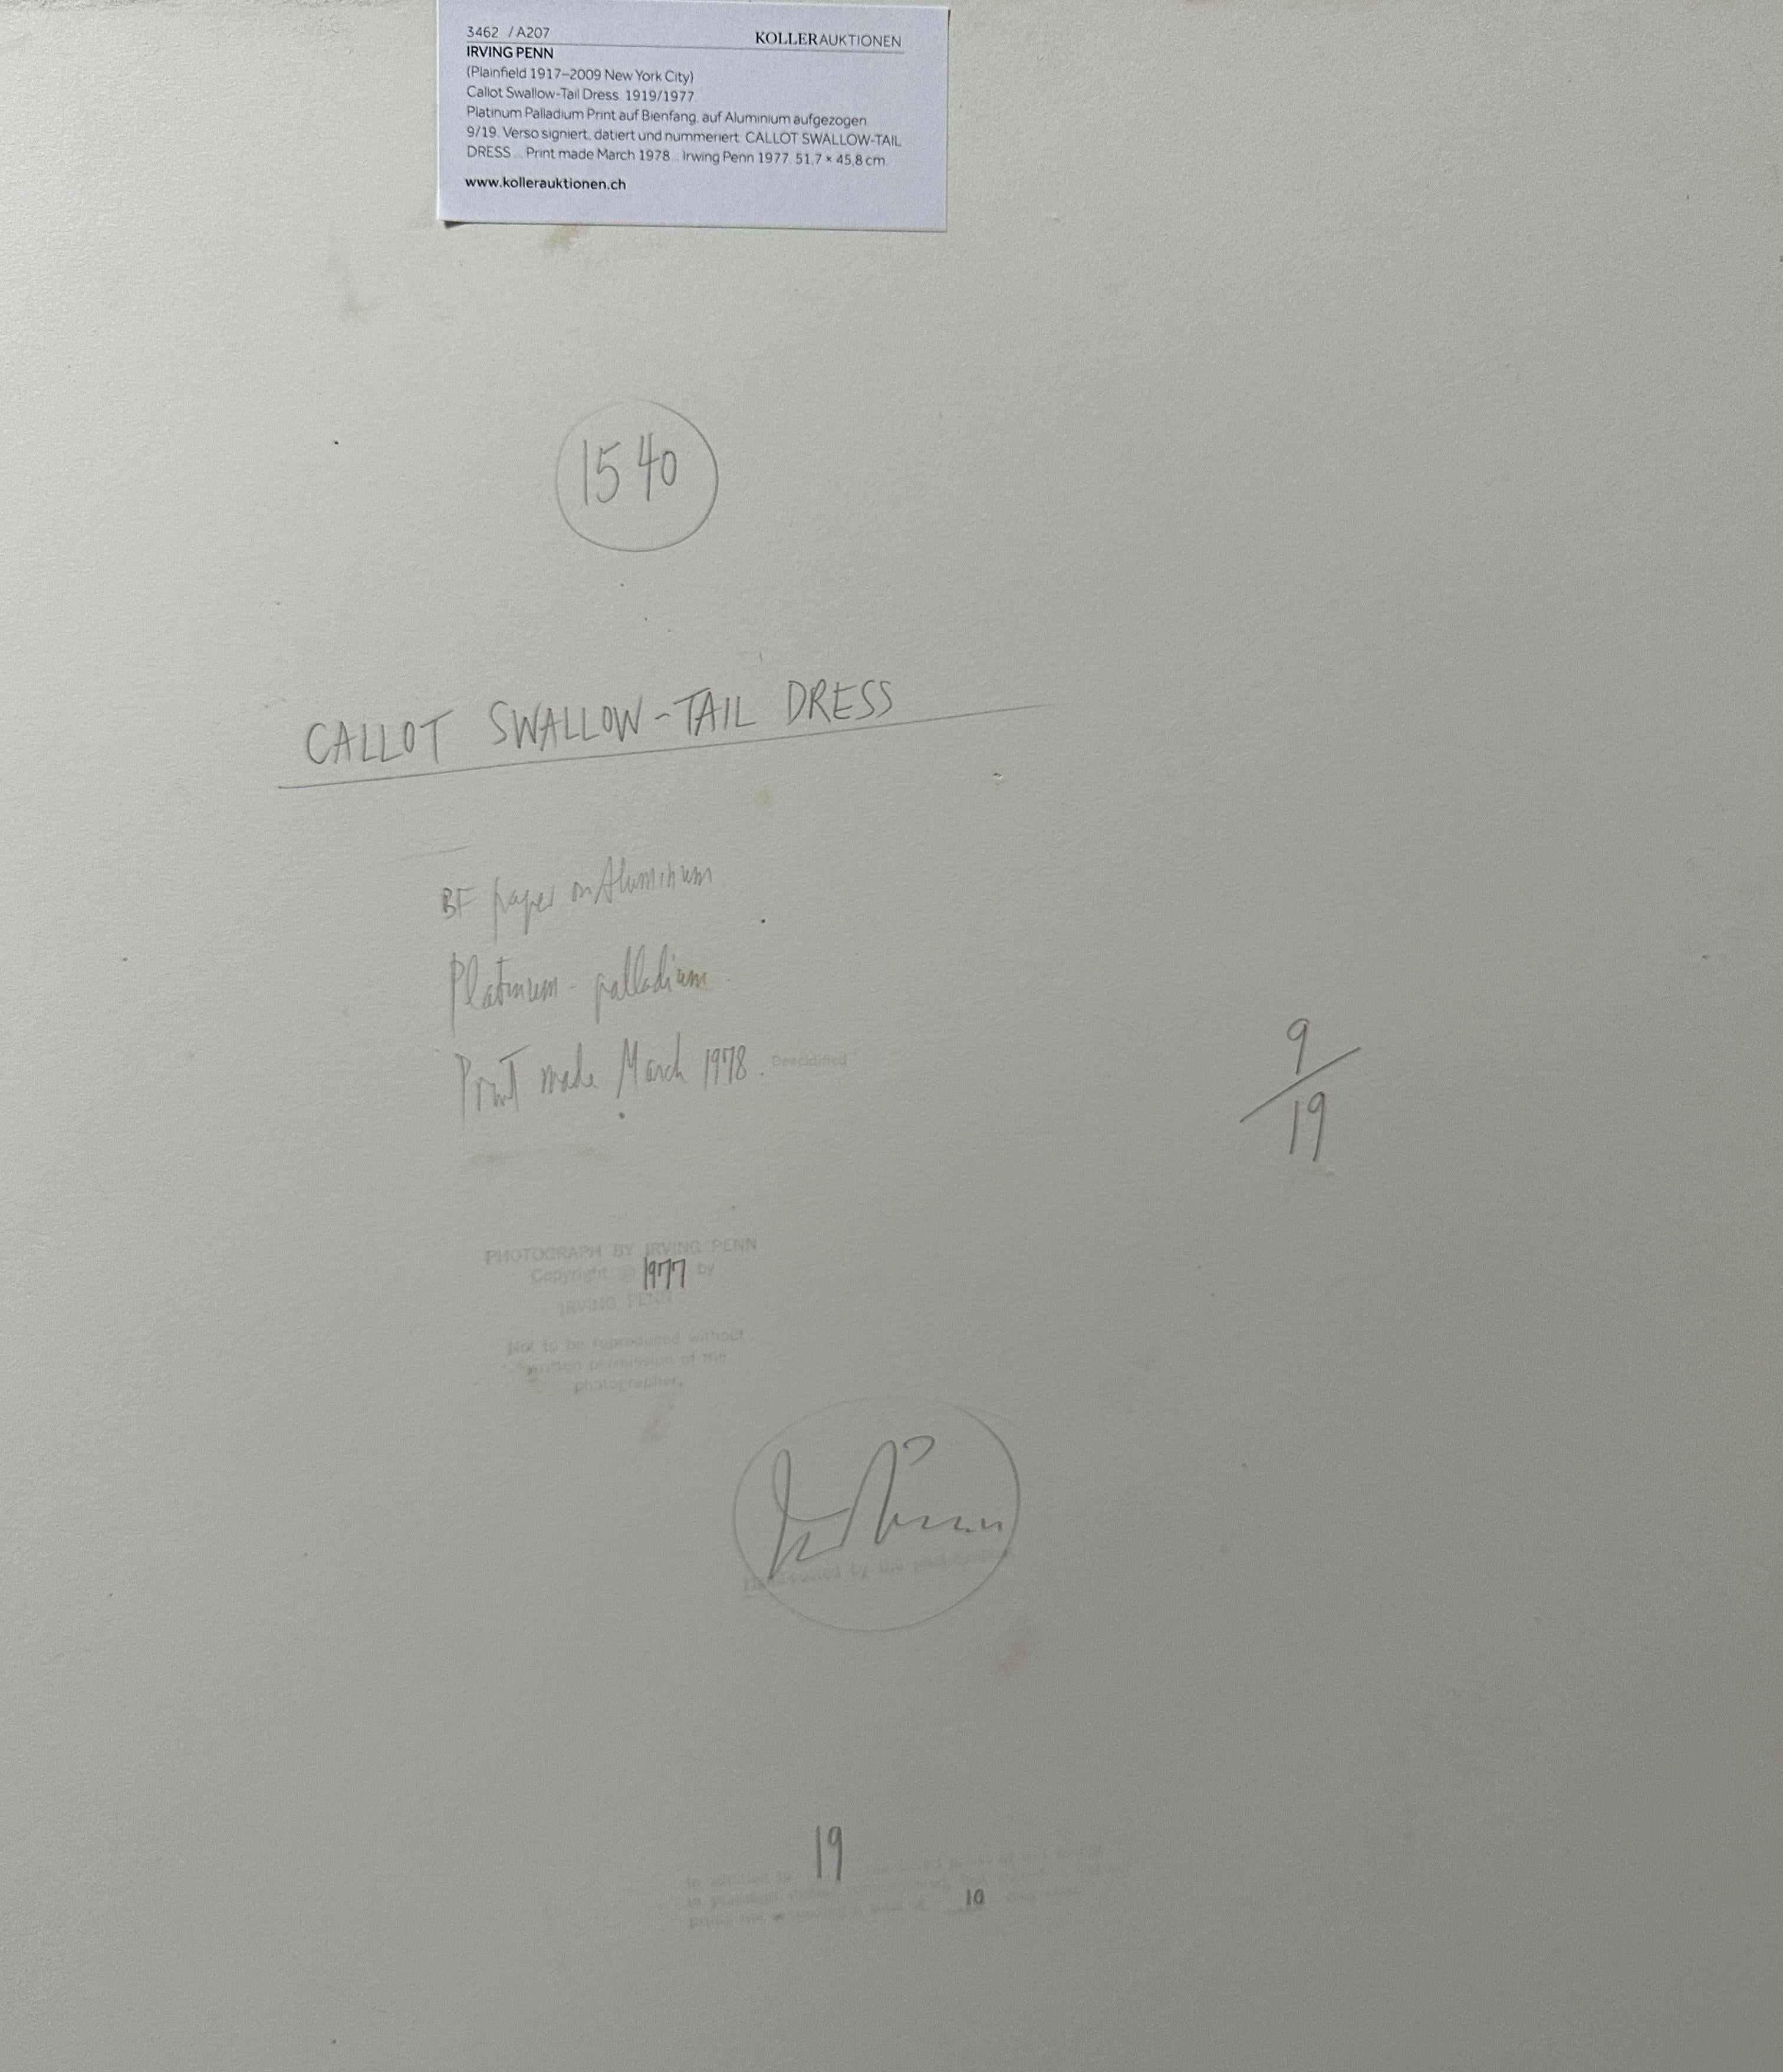 Irving Penn (1917 - 2009, USA)
Callot Schwalbenschwanzkleid 1977/1978
Platin-Palladium-Druck auf Bienfang 
Montiert auf Aluminium, gerahmt 
51,7 x 45,8 cm (20 1/3 x 17 3/4 in.)
Ausgabe 9/19
Verso signiert, datiert und nummeriert 
Druck vom März